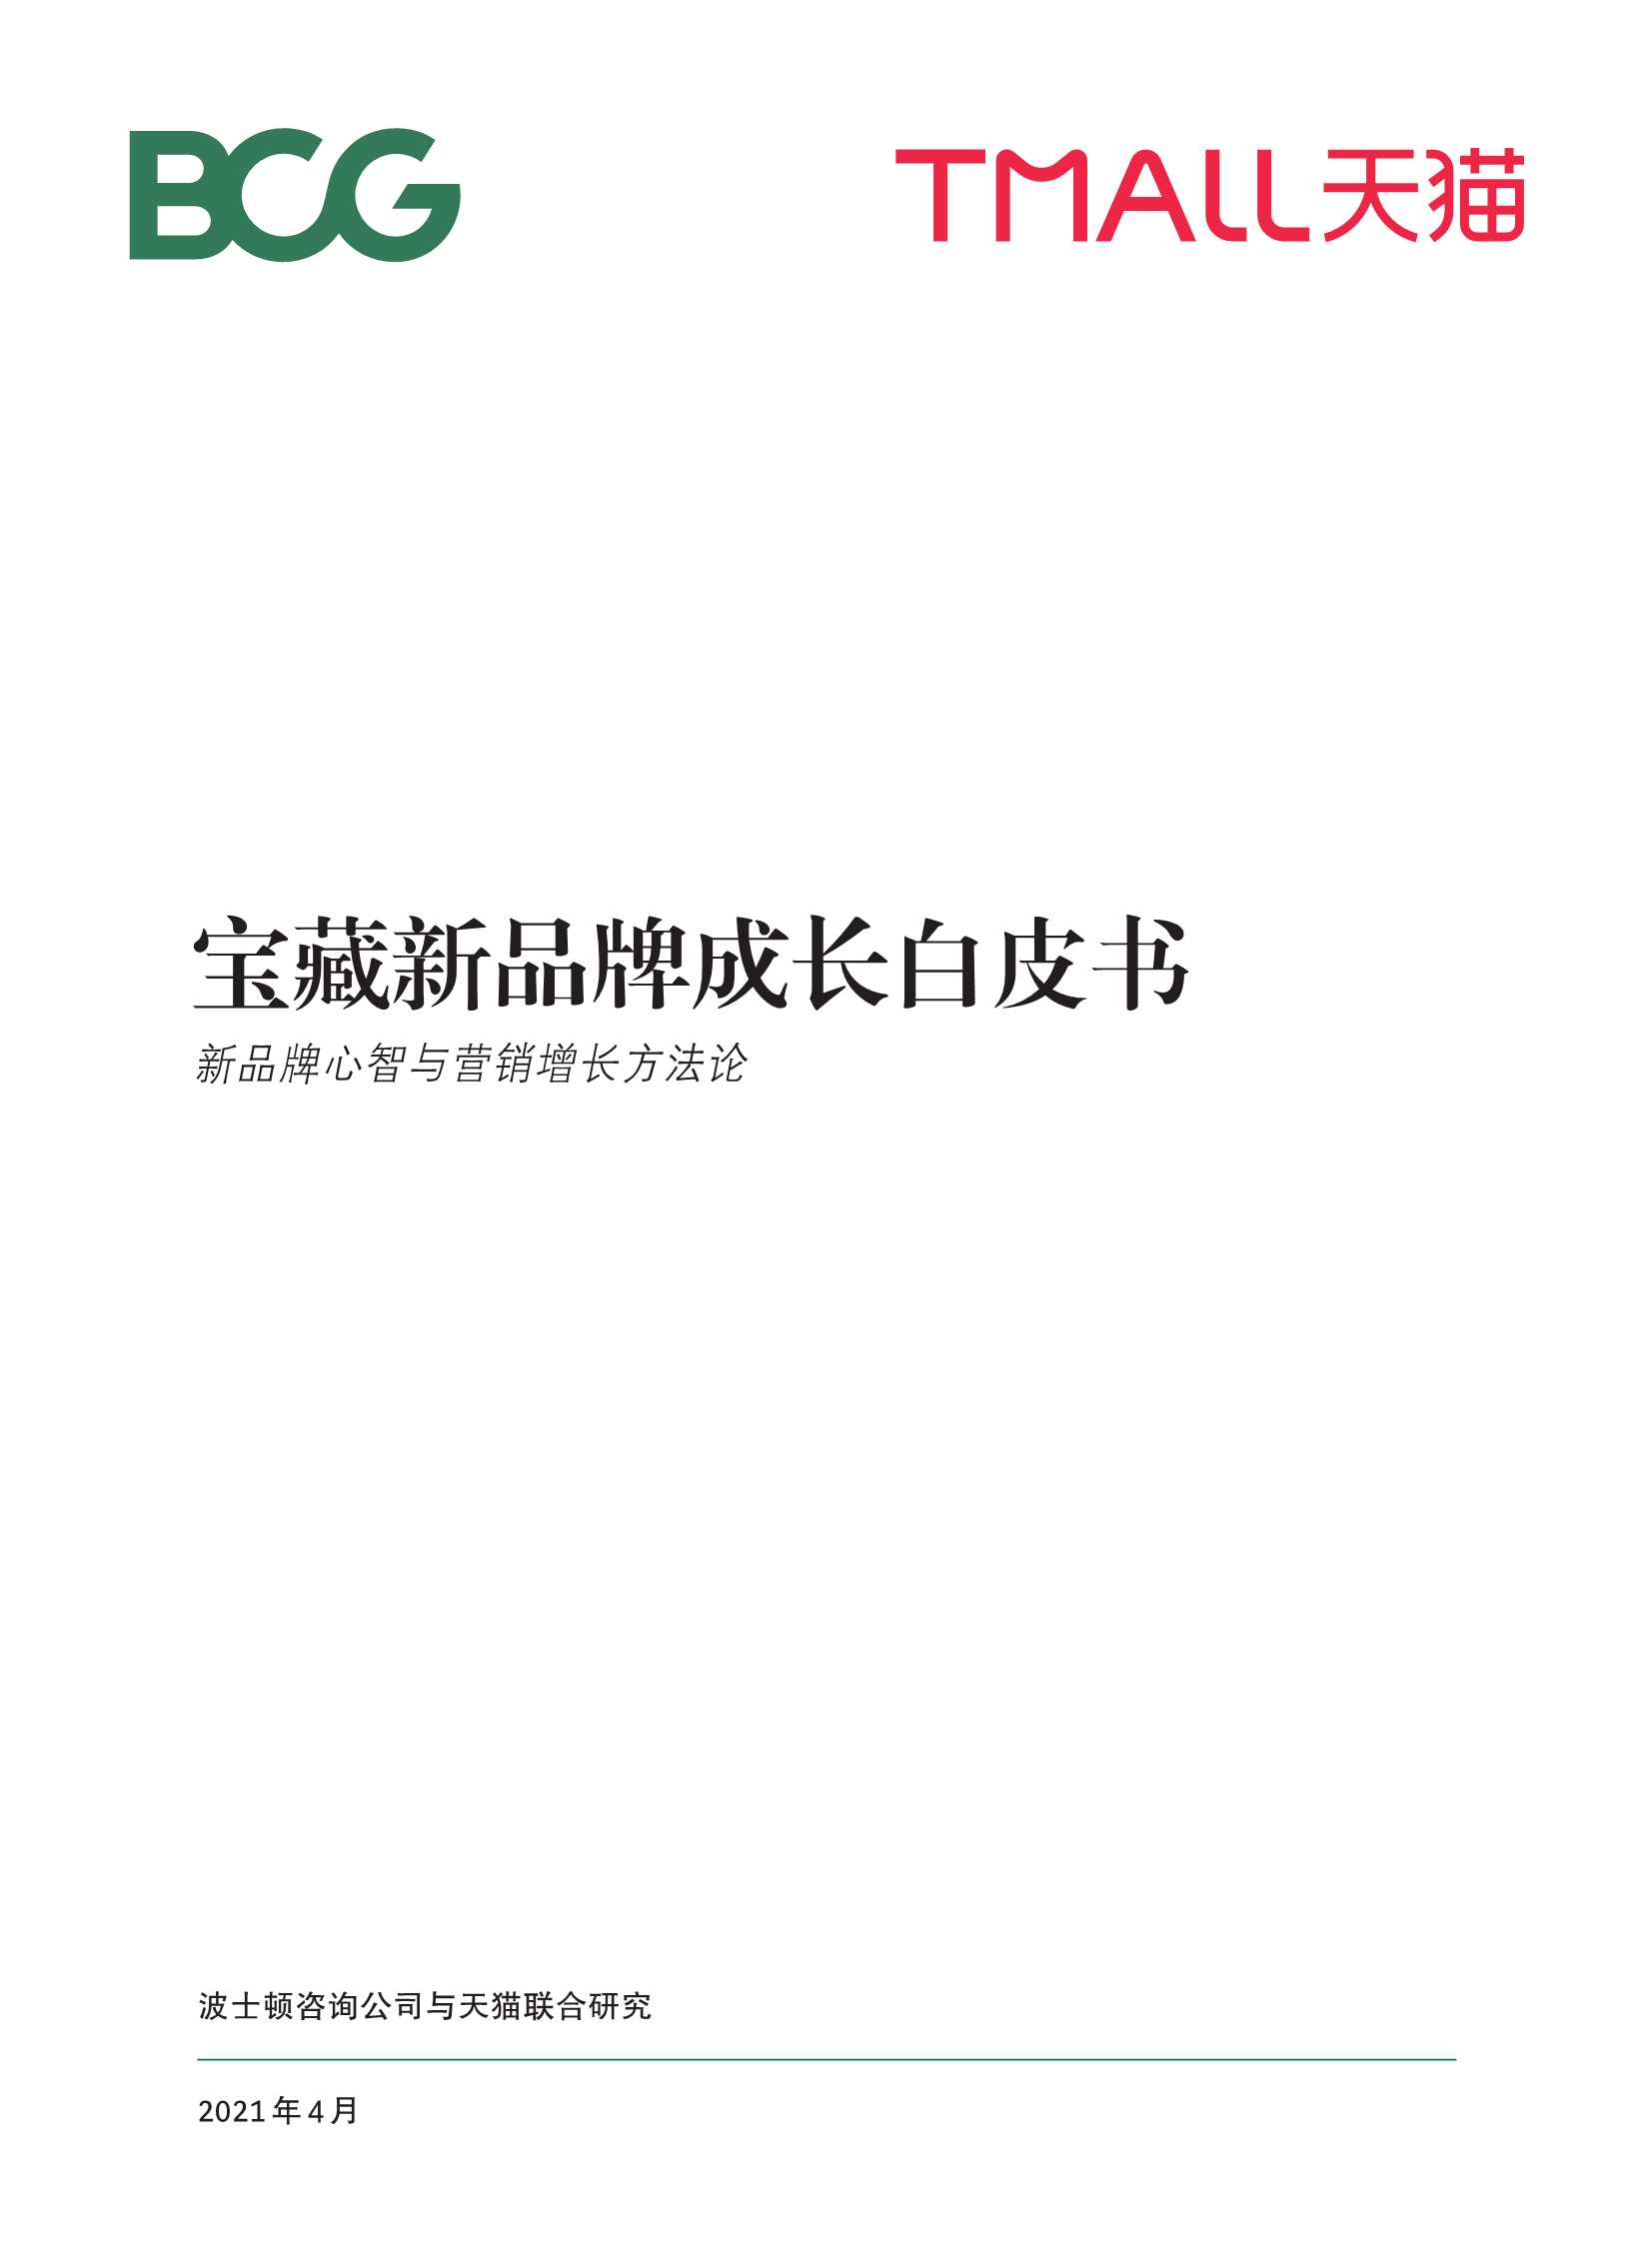 BCG&天猫-宝藏新品牌成长白皮书-2021.04-29页